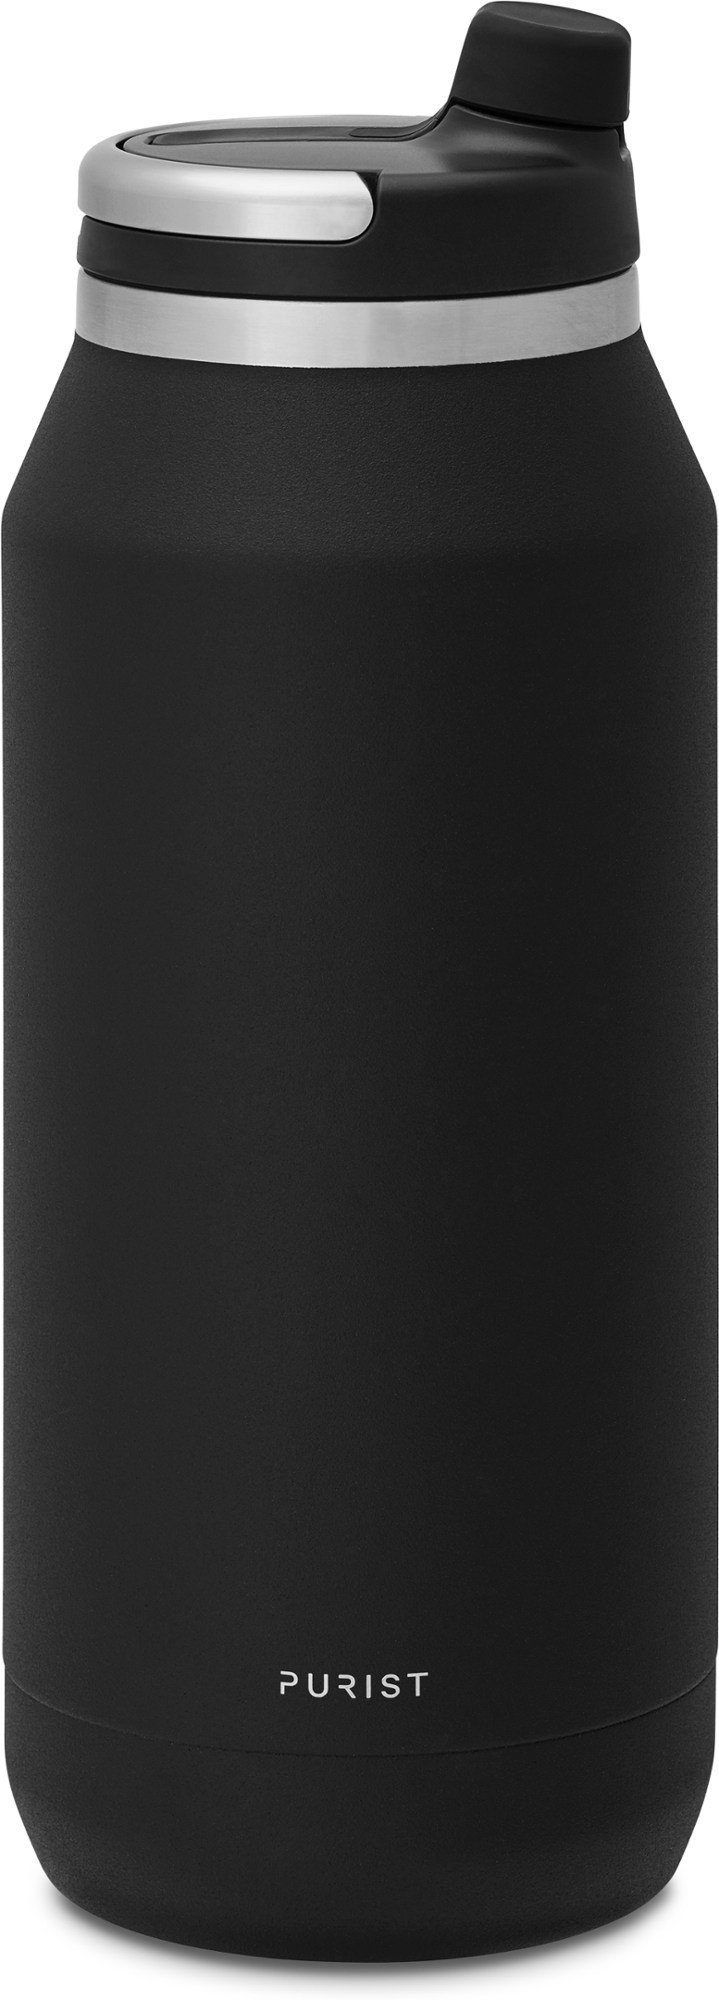 Вакуумная бутылка для воды Founder с крышкой Union Top - 32 эт. унция Purist, черный 500 мл умный автомобильный термос чашка чай кофе вакуумная фляжка дисплей температуры умная бутылка для воды для seat fr leon mk2 mk3 5f 6